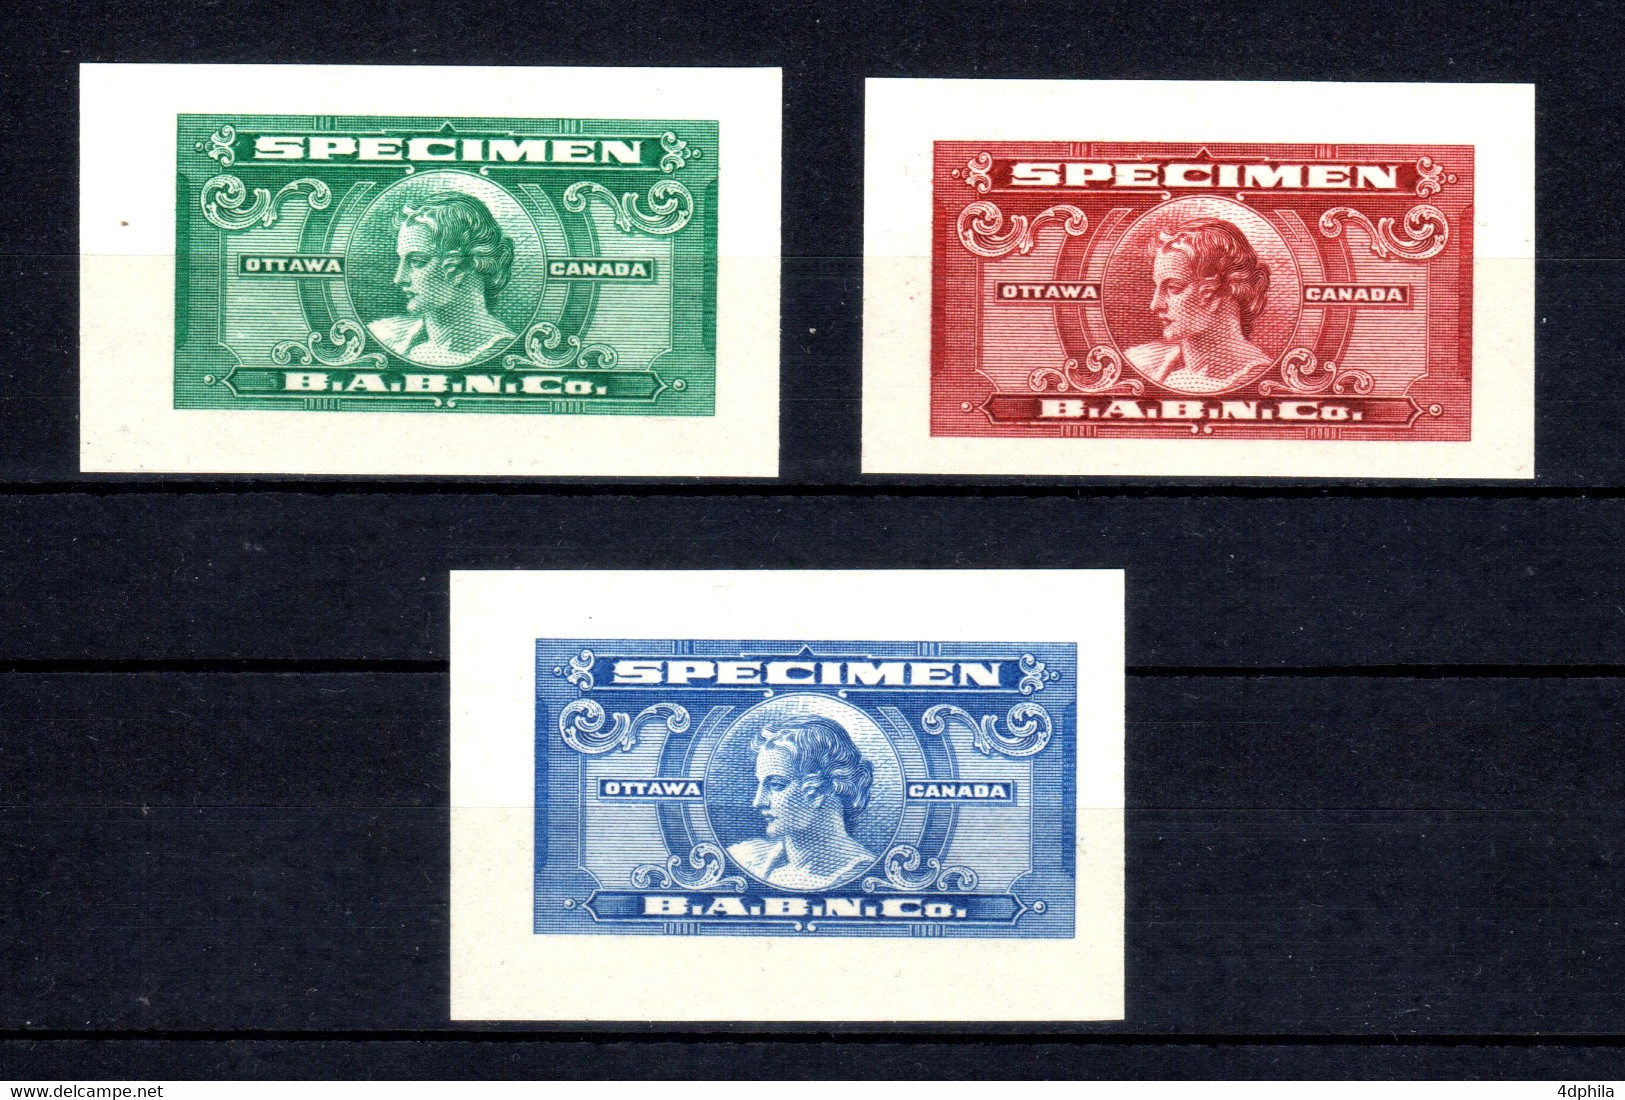 CANADA - 1935 - RARE 3 Dummy Stamps B.A.B.N.Co. - Specimen Essay Proof Trial Prueba Probedruck Test - Abarten Und Kuriositäten